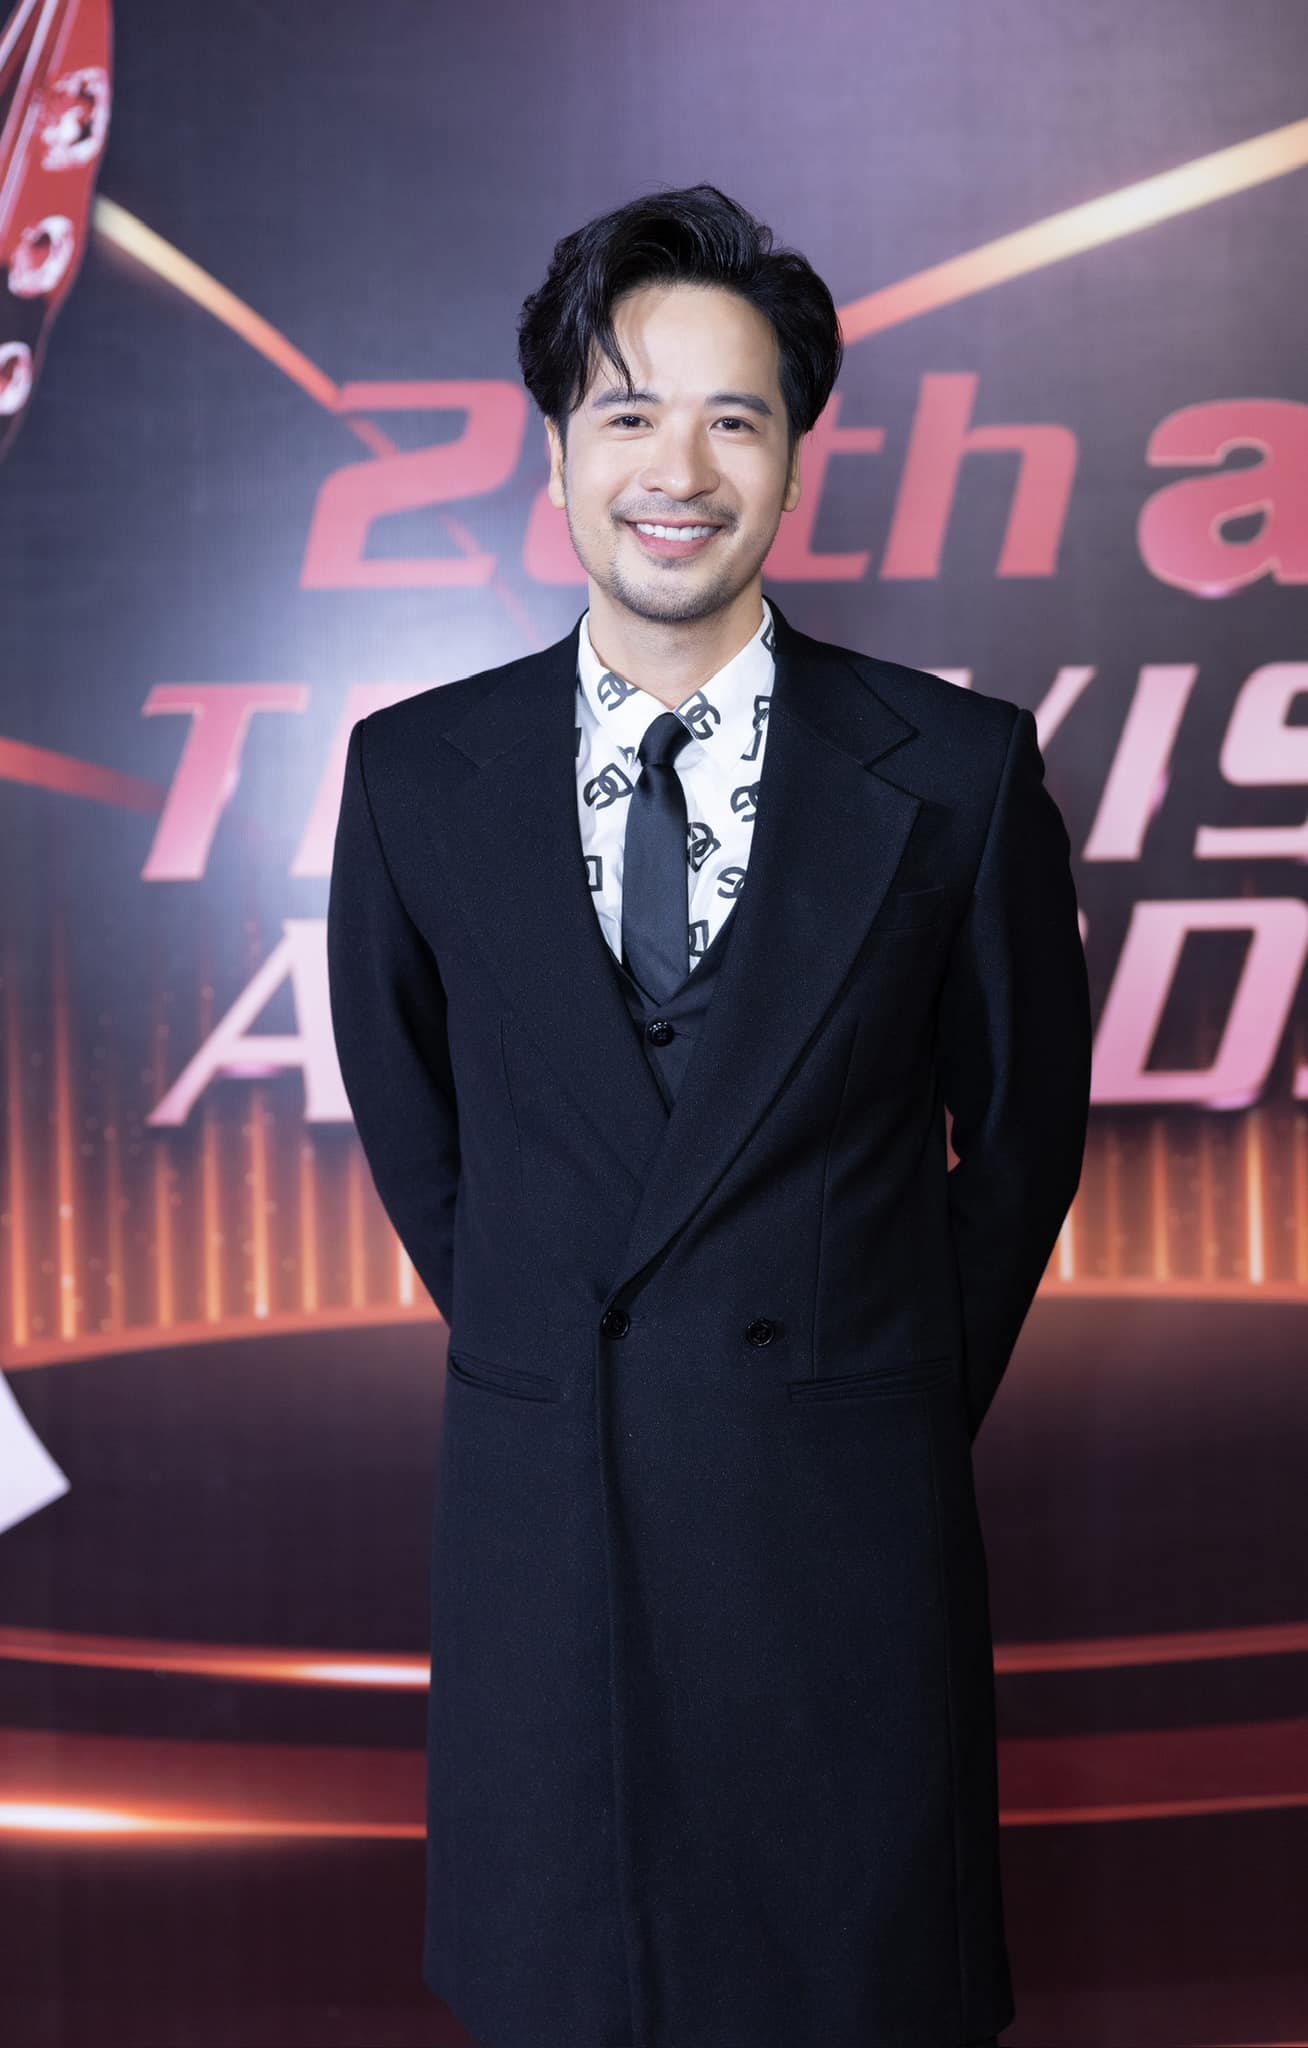 Đoàn Minh Tài sánh đôi cùng Trương Ngọc Ánh, Ngọc Thanh Tâm đại diện trao giải tại sự kiện ATA Asian Television Awards - ảnh 1